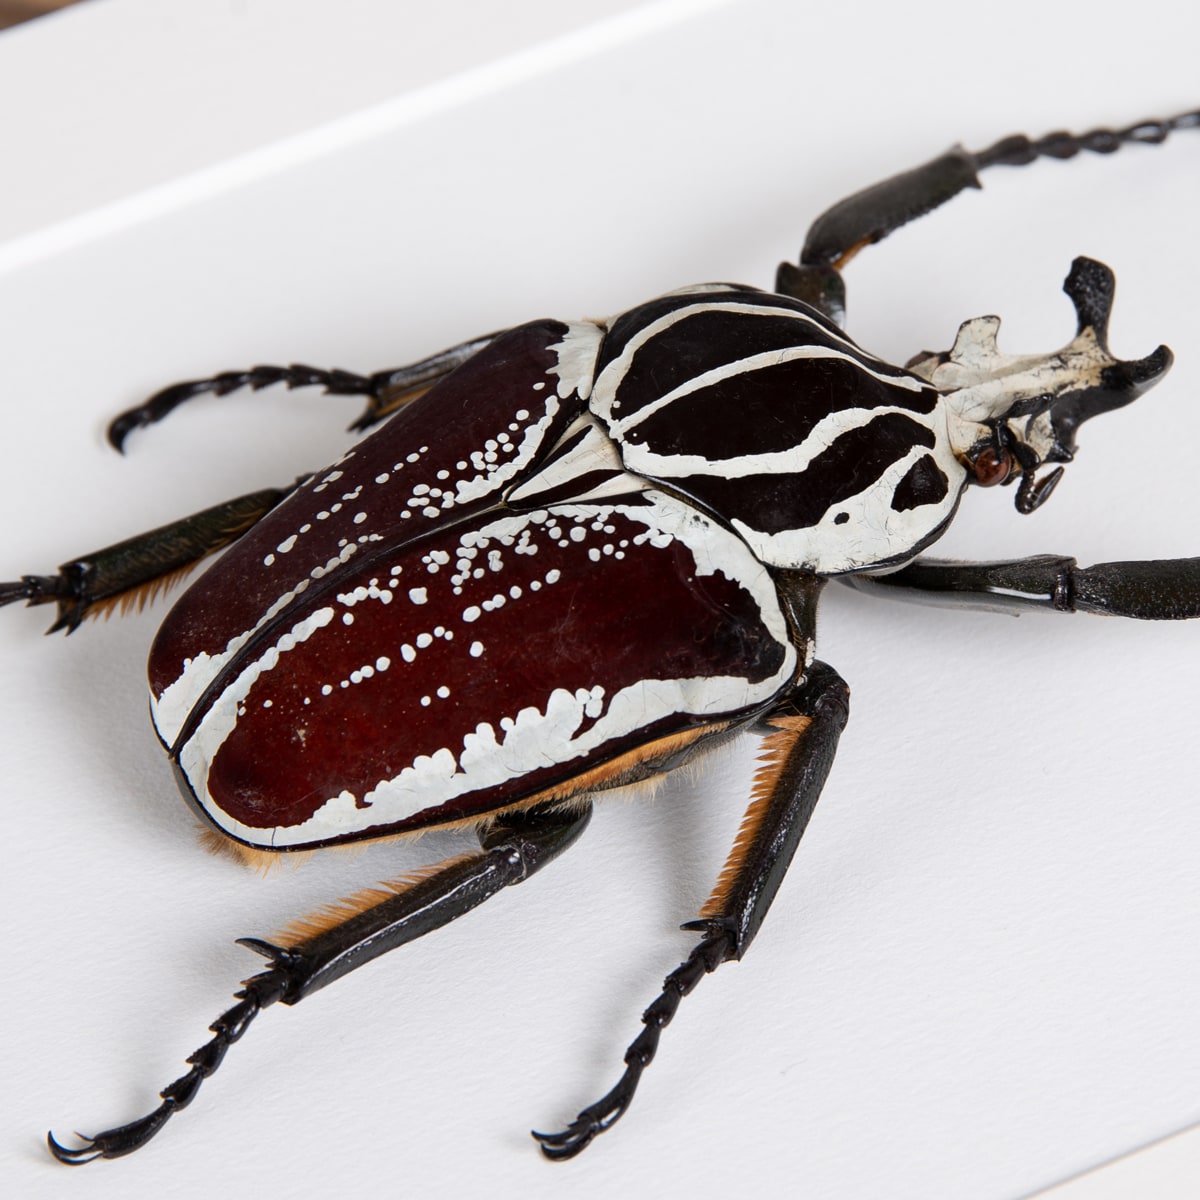 Goliath Beetle in Box Frame (Goliathus goliatus conspersus)